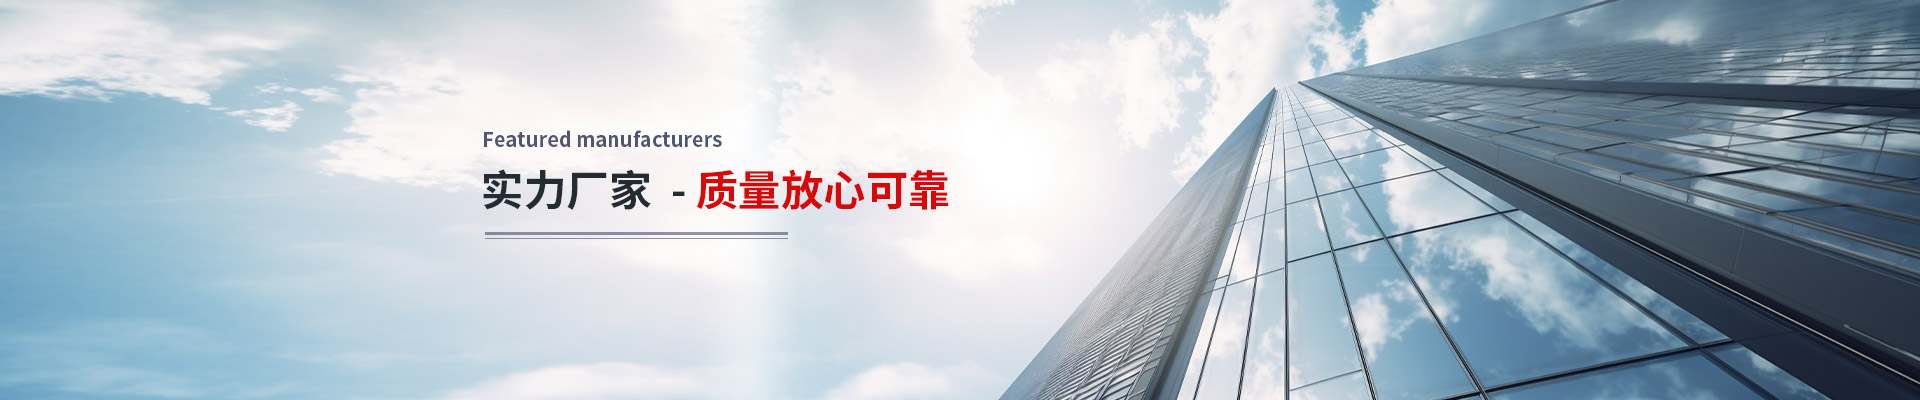 上海隆旅電子科技有限公司公司介紹